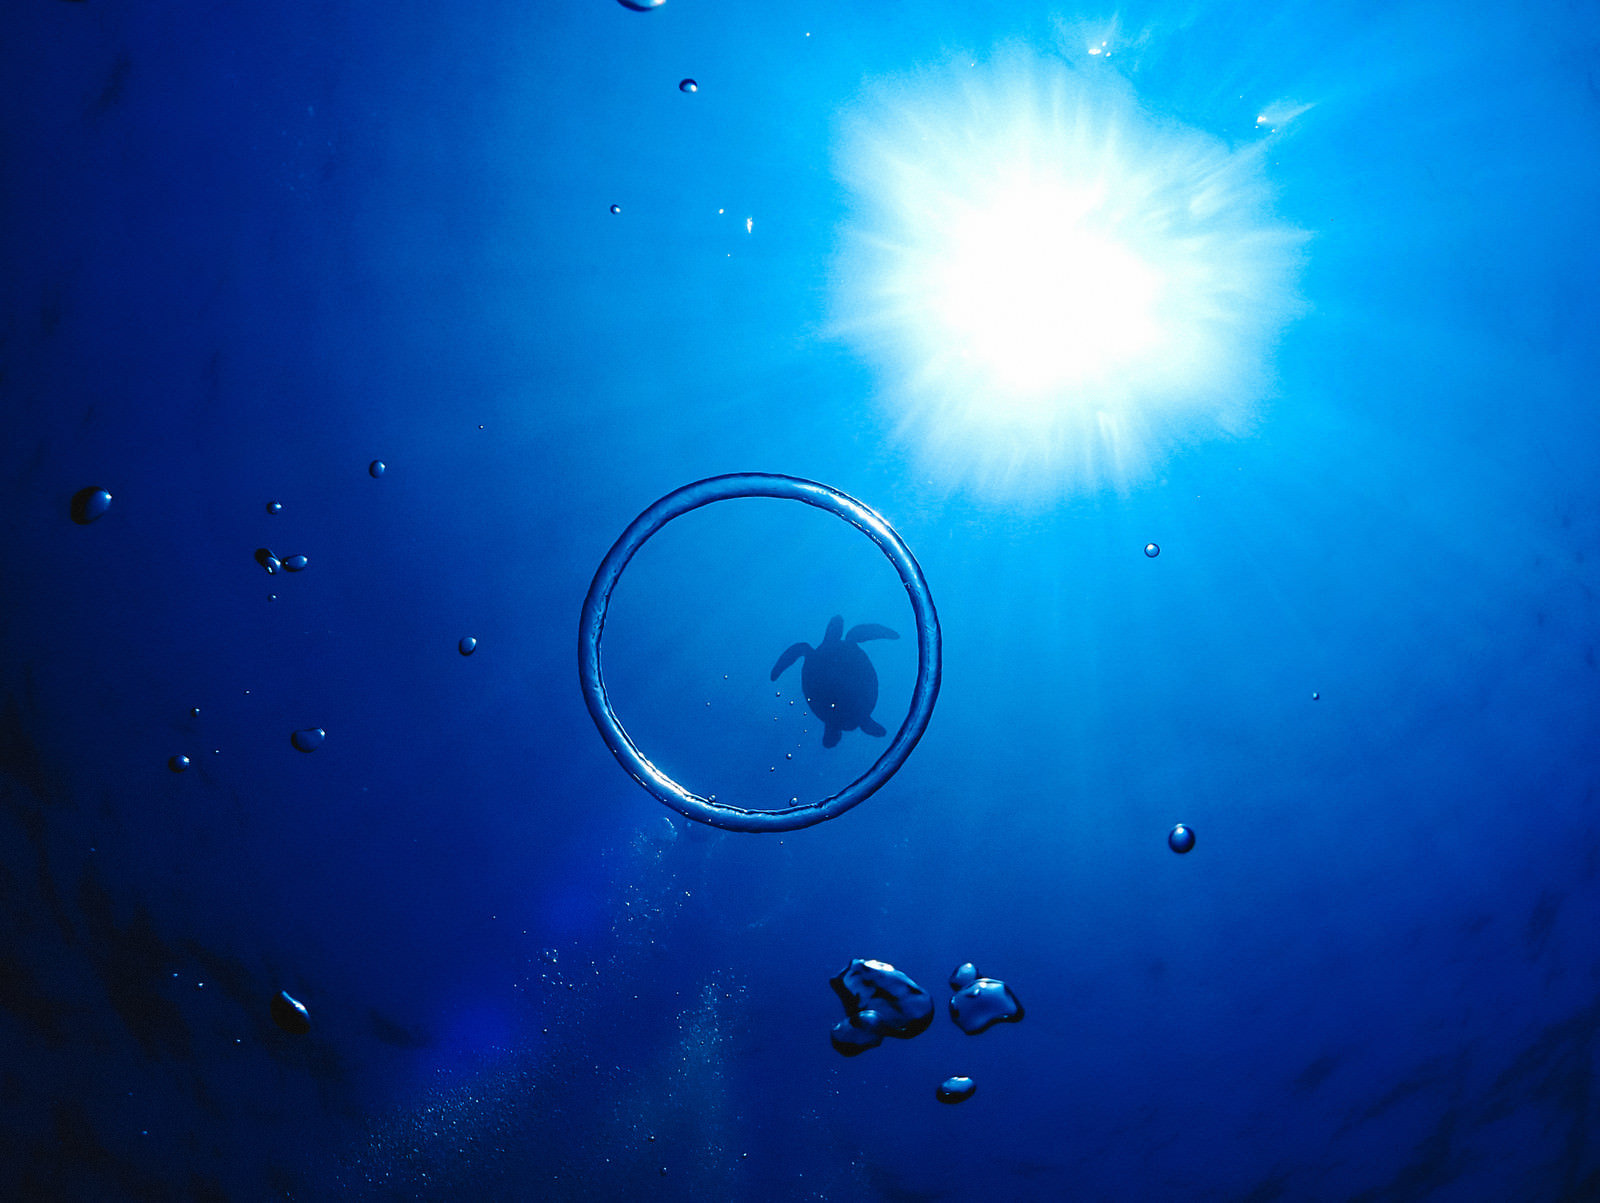 「エアーの輪っかと海亀のシルエット」の写真